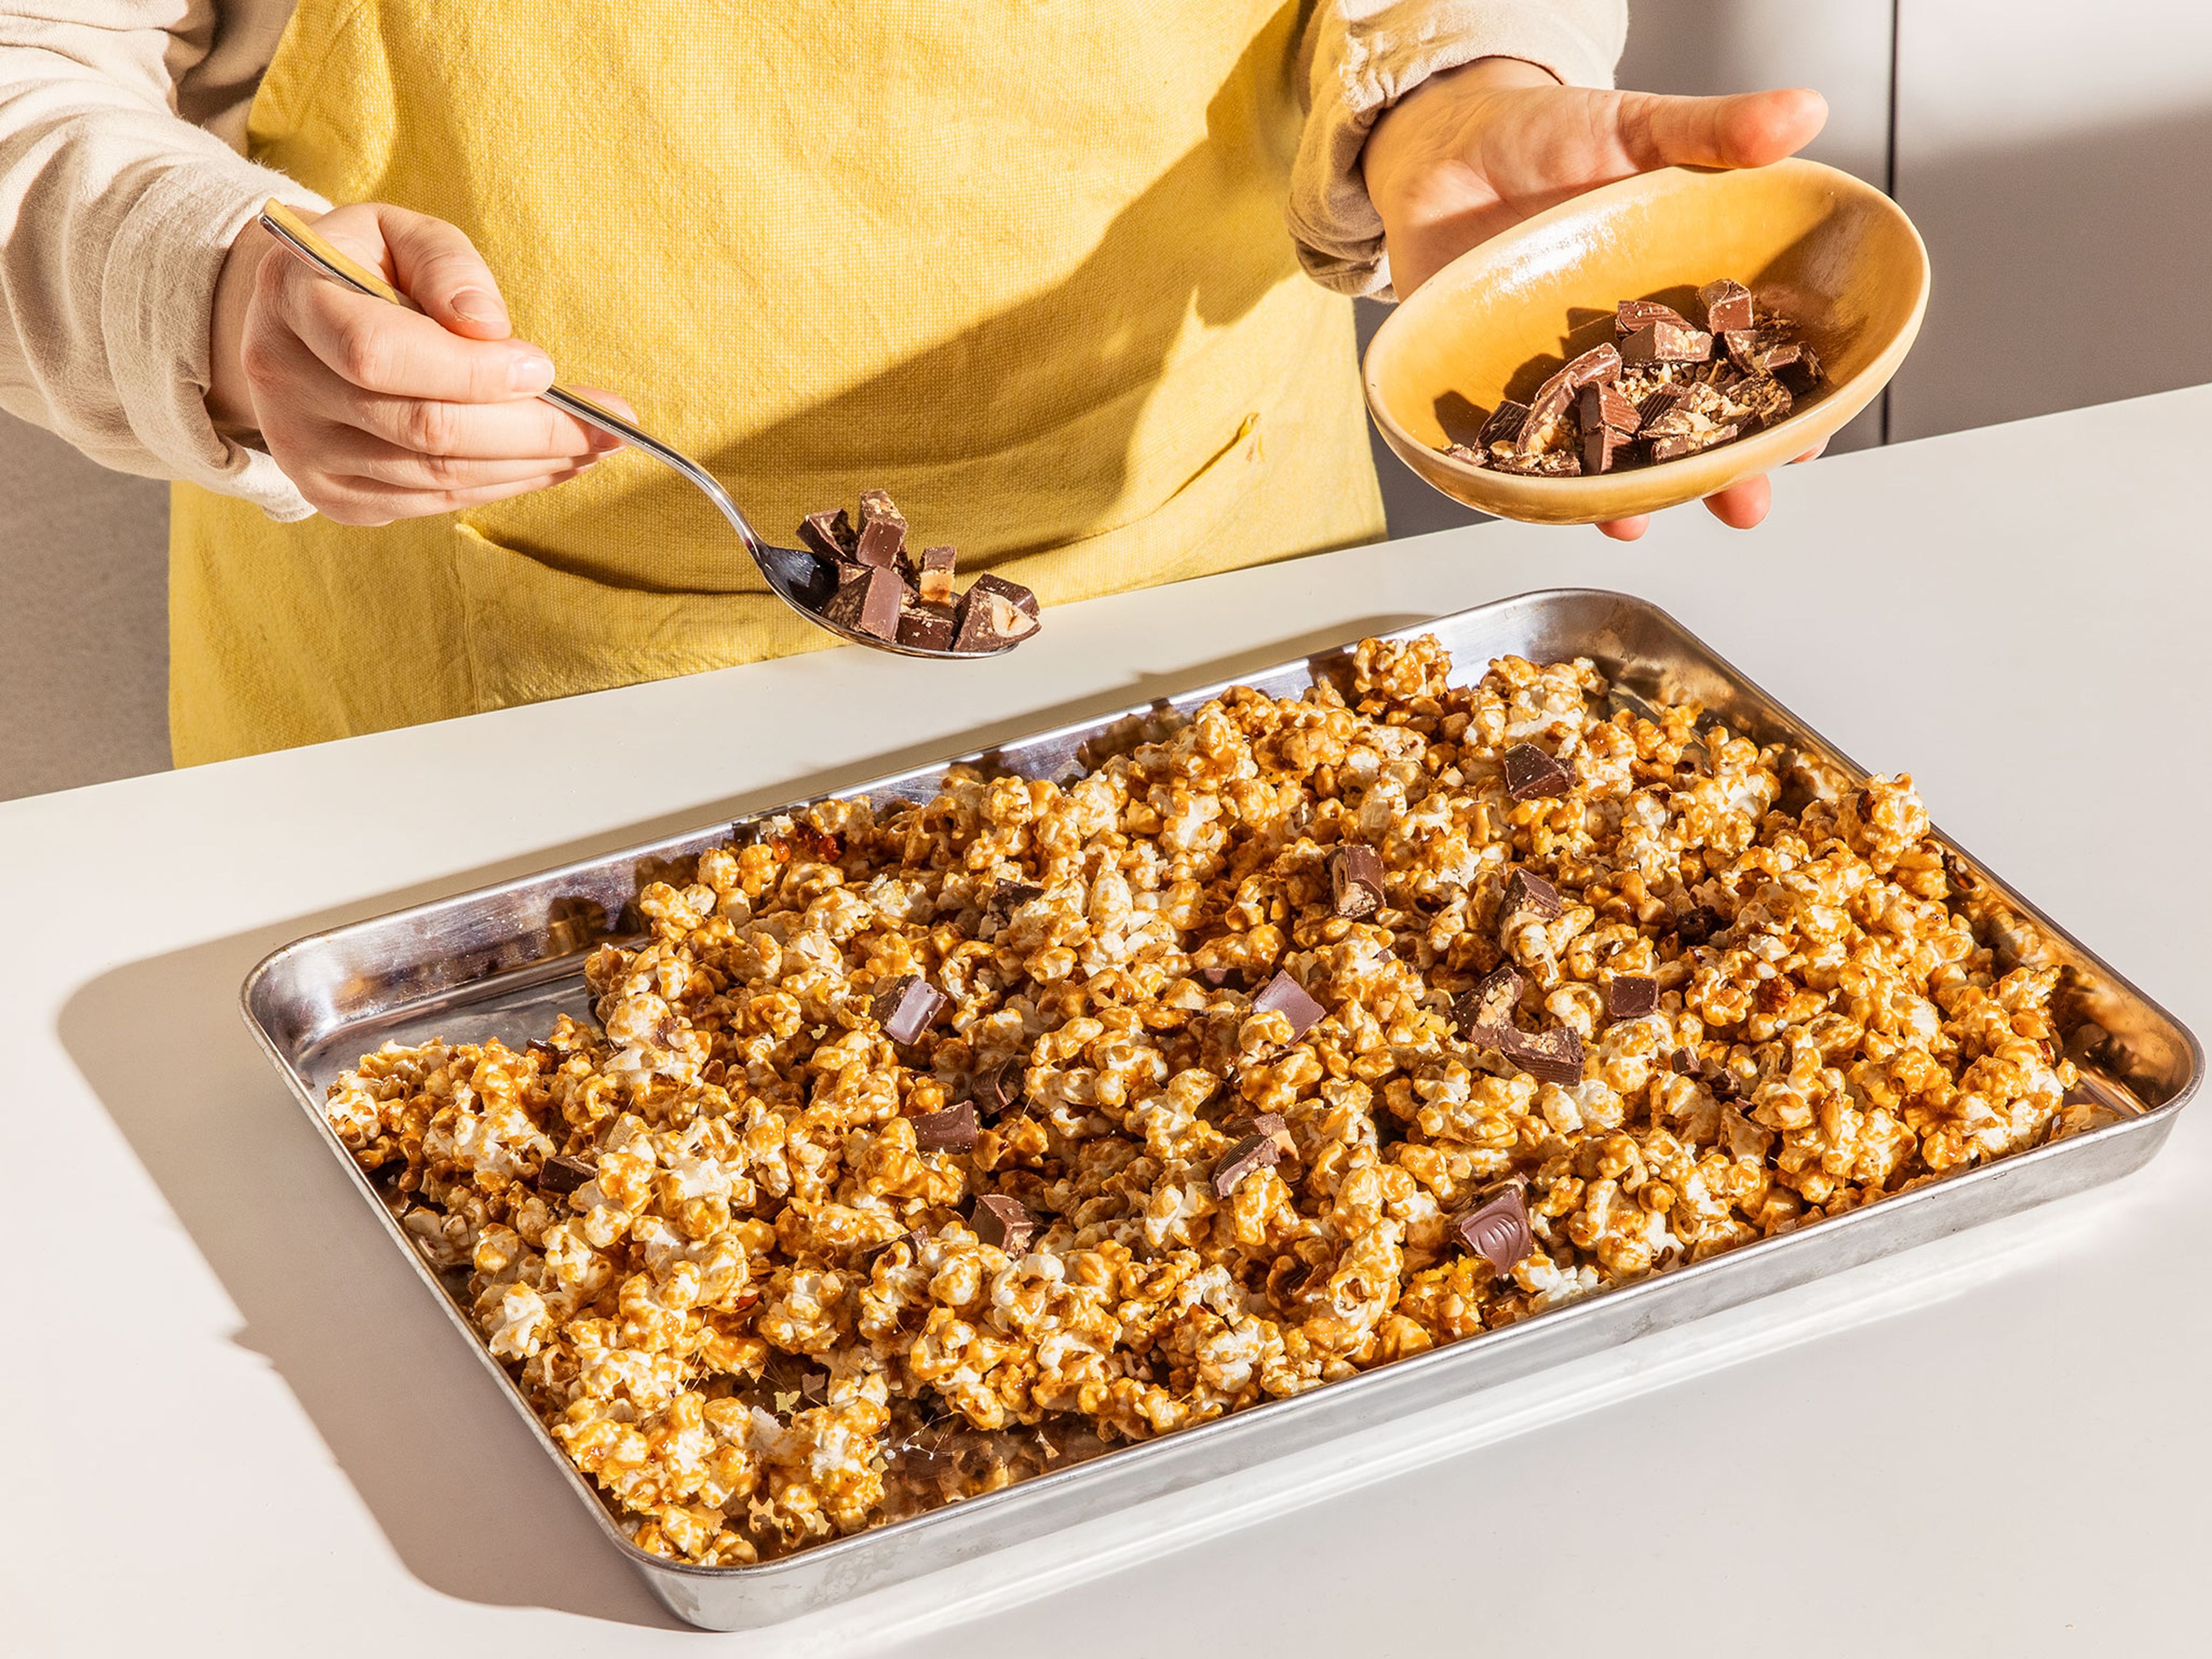 Die Ferrero Küsschen Stücke auf dem noch warmen Karamell-Popcorn verteilen, sodass sie leicht schmelzen. Mit grobem Meersalz bestreuen. Das Popcorn komplett auskühlen lassen. Danach grob zerbrechen.